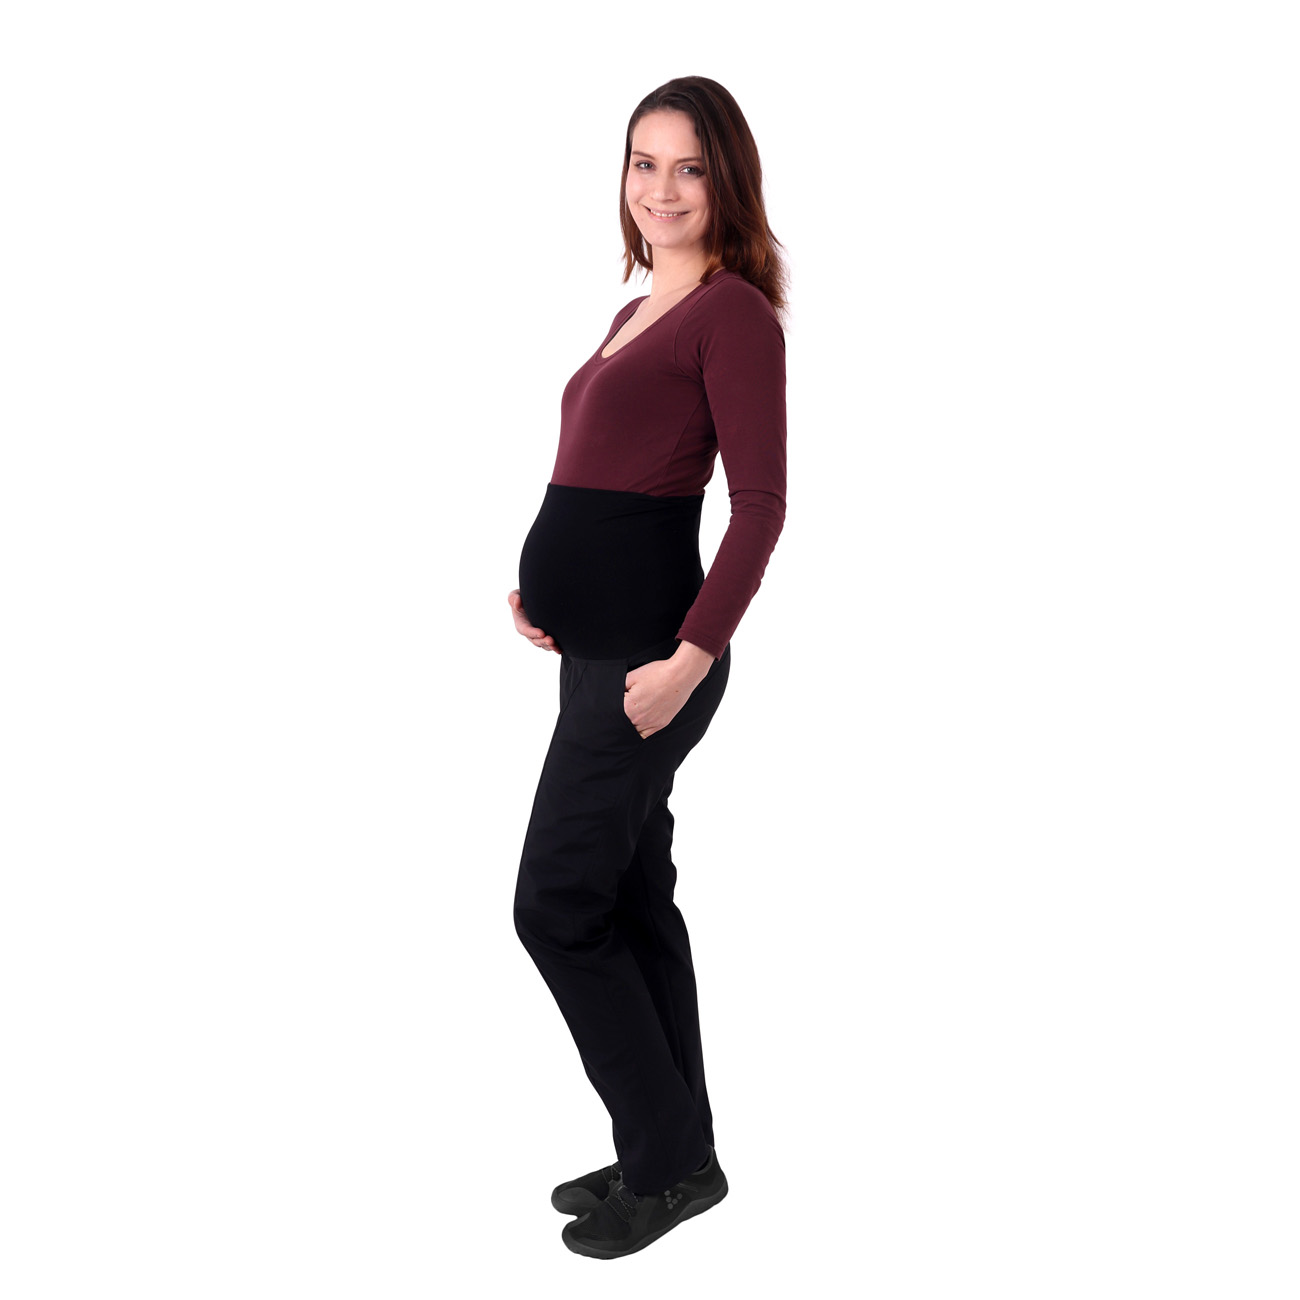 Jarní/letní těhotenské softshellové kalhoty Liva, 38 prodloužené, černé 2. jakost č. 819